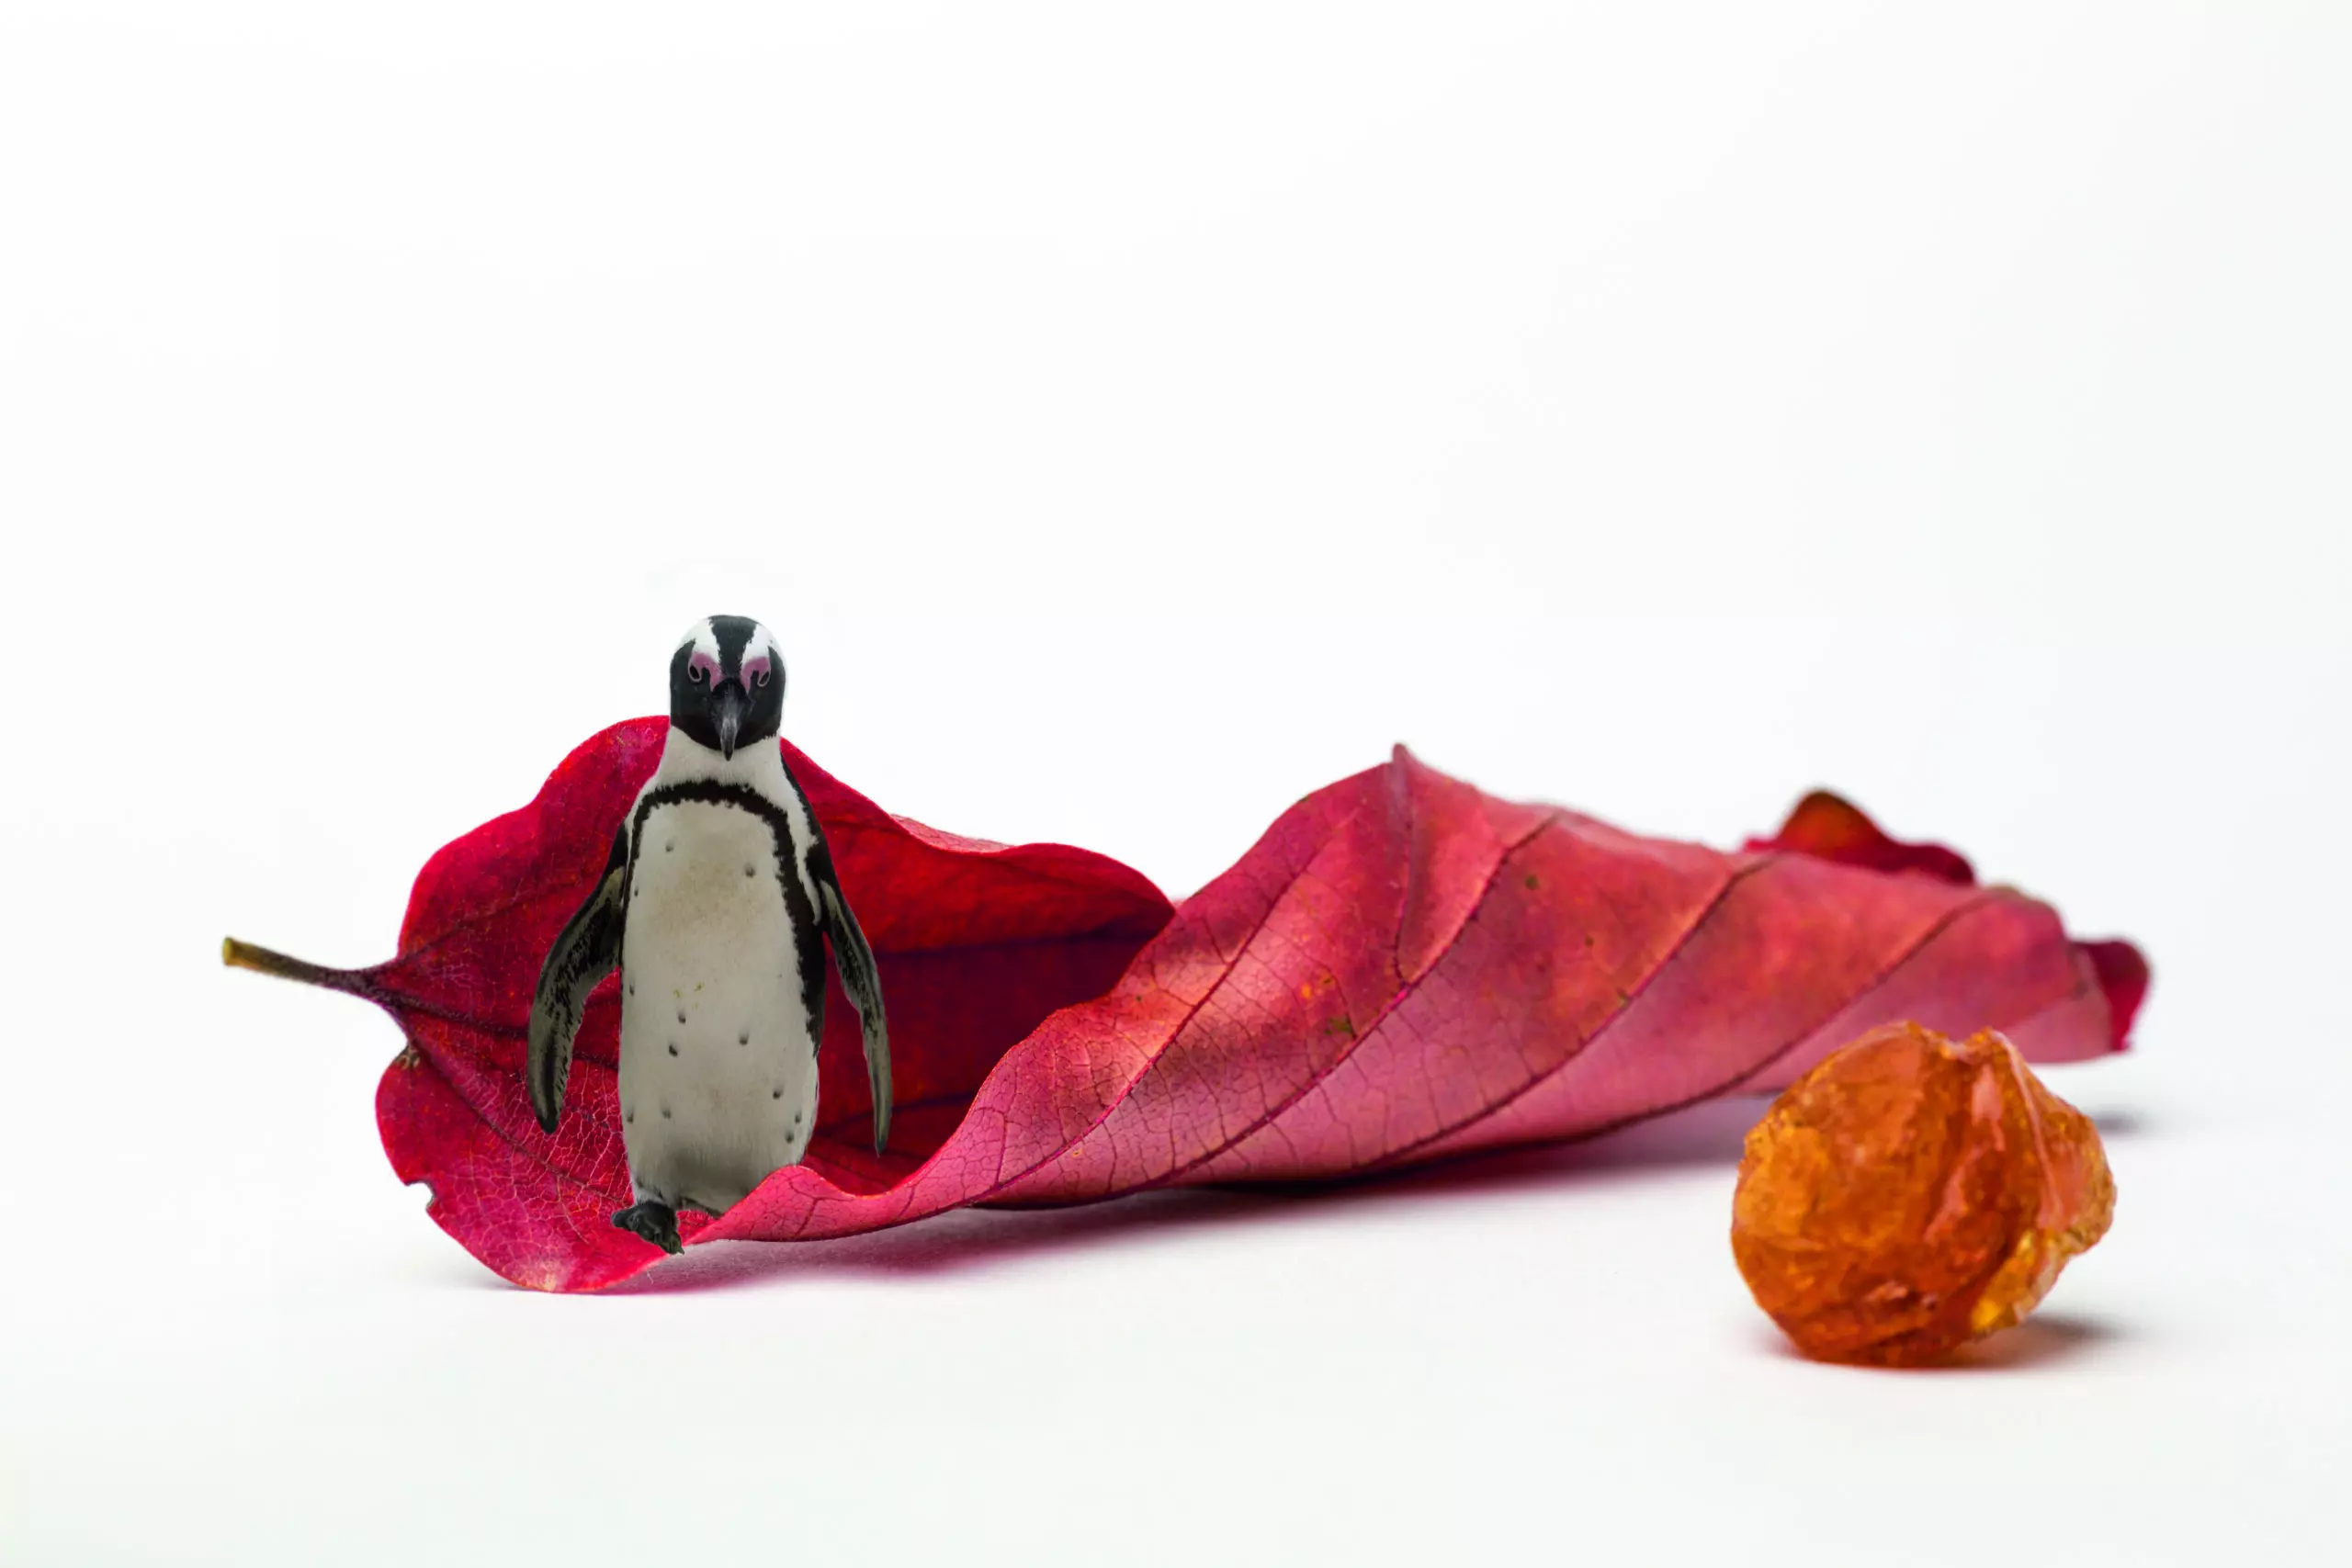 Wandbild (4388) red rock penguin präsentiert: Kreatives,Sonstiges Kreatives